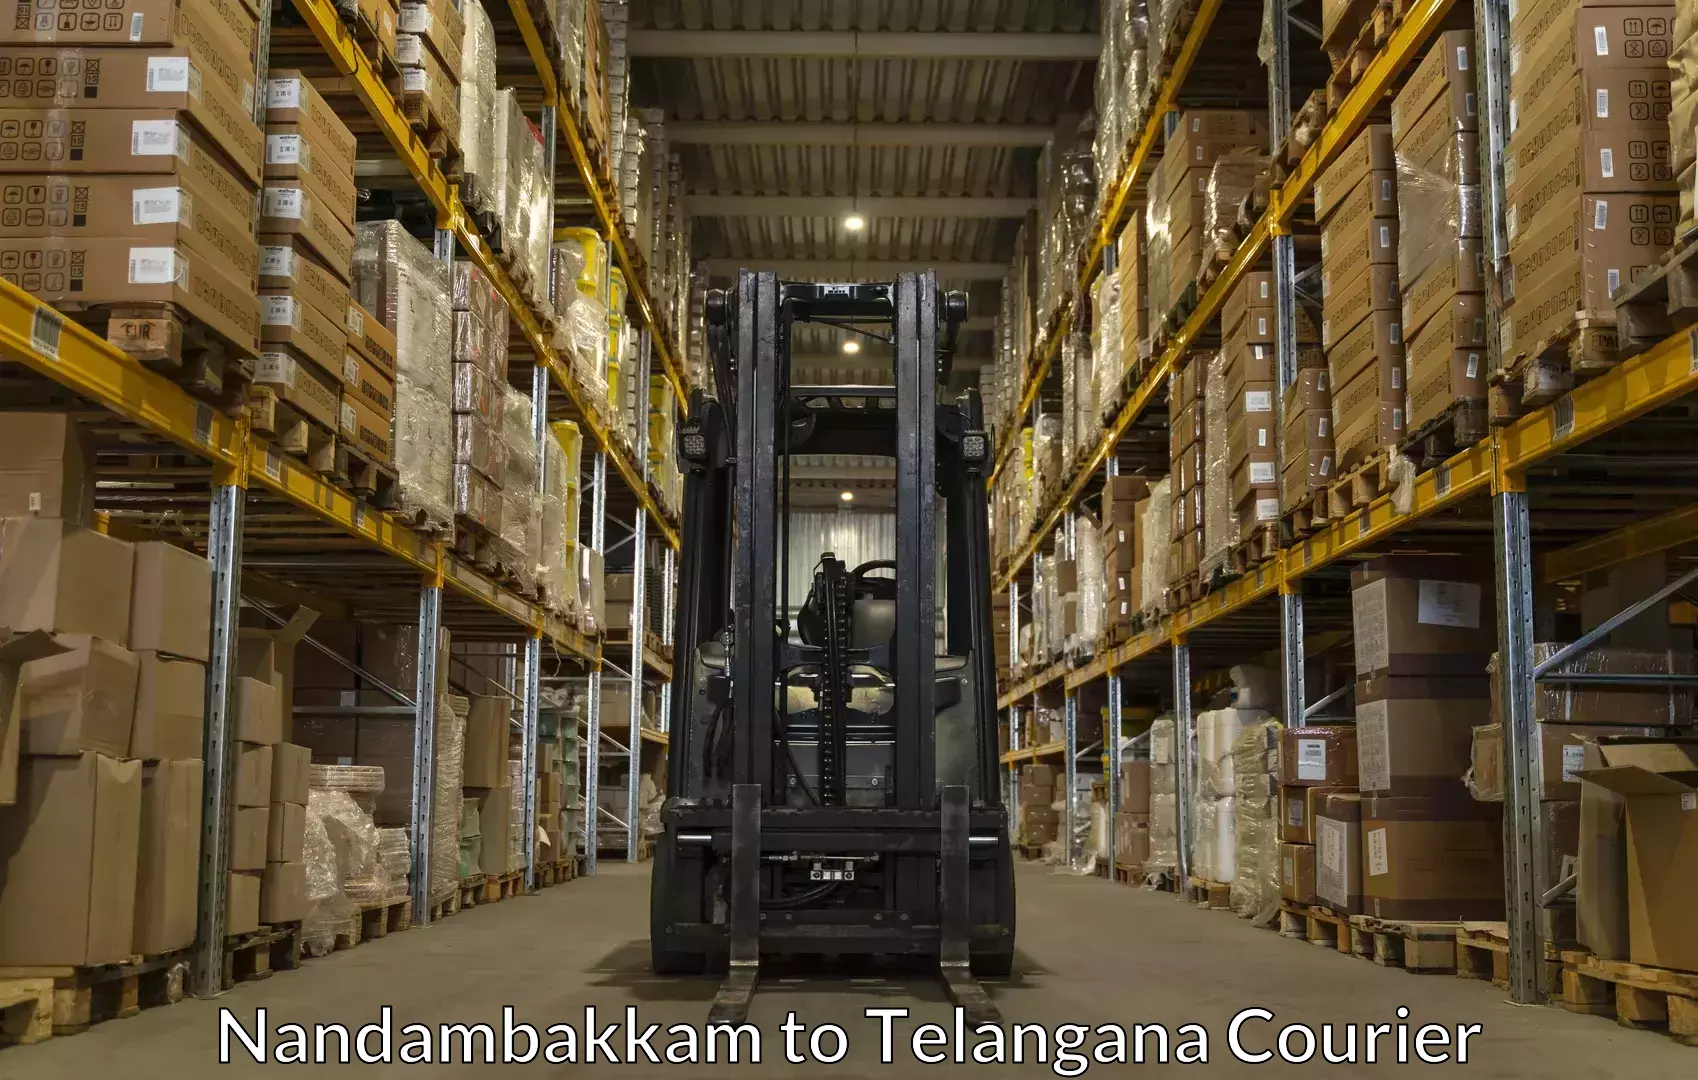 Baggage shipping experts Nandambakkam to Bachupally